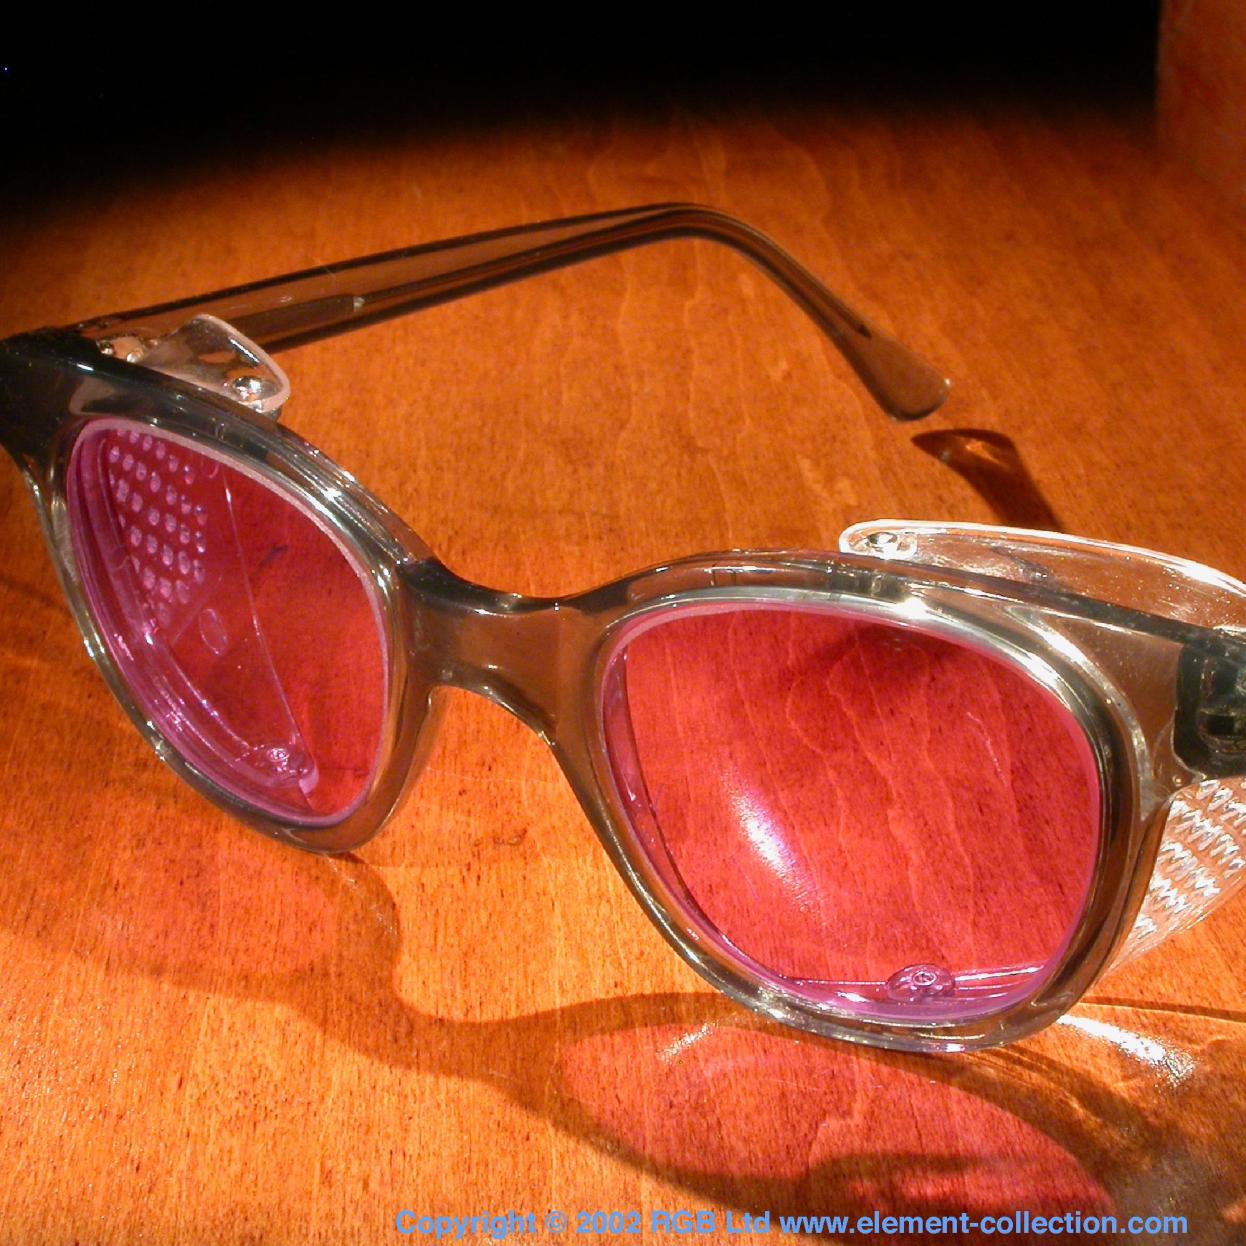 Praseodymium Glass-blower's glasses